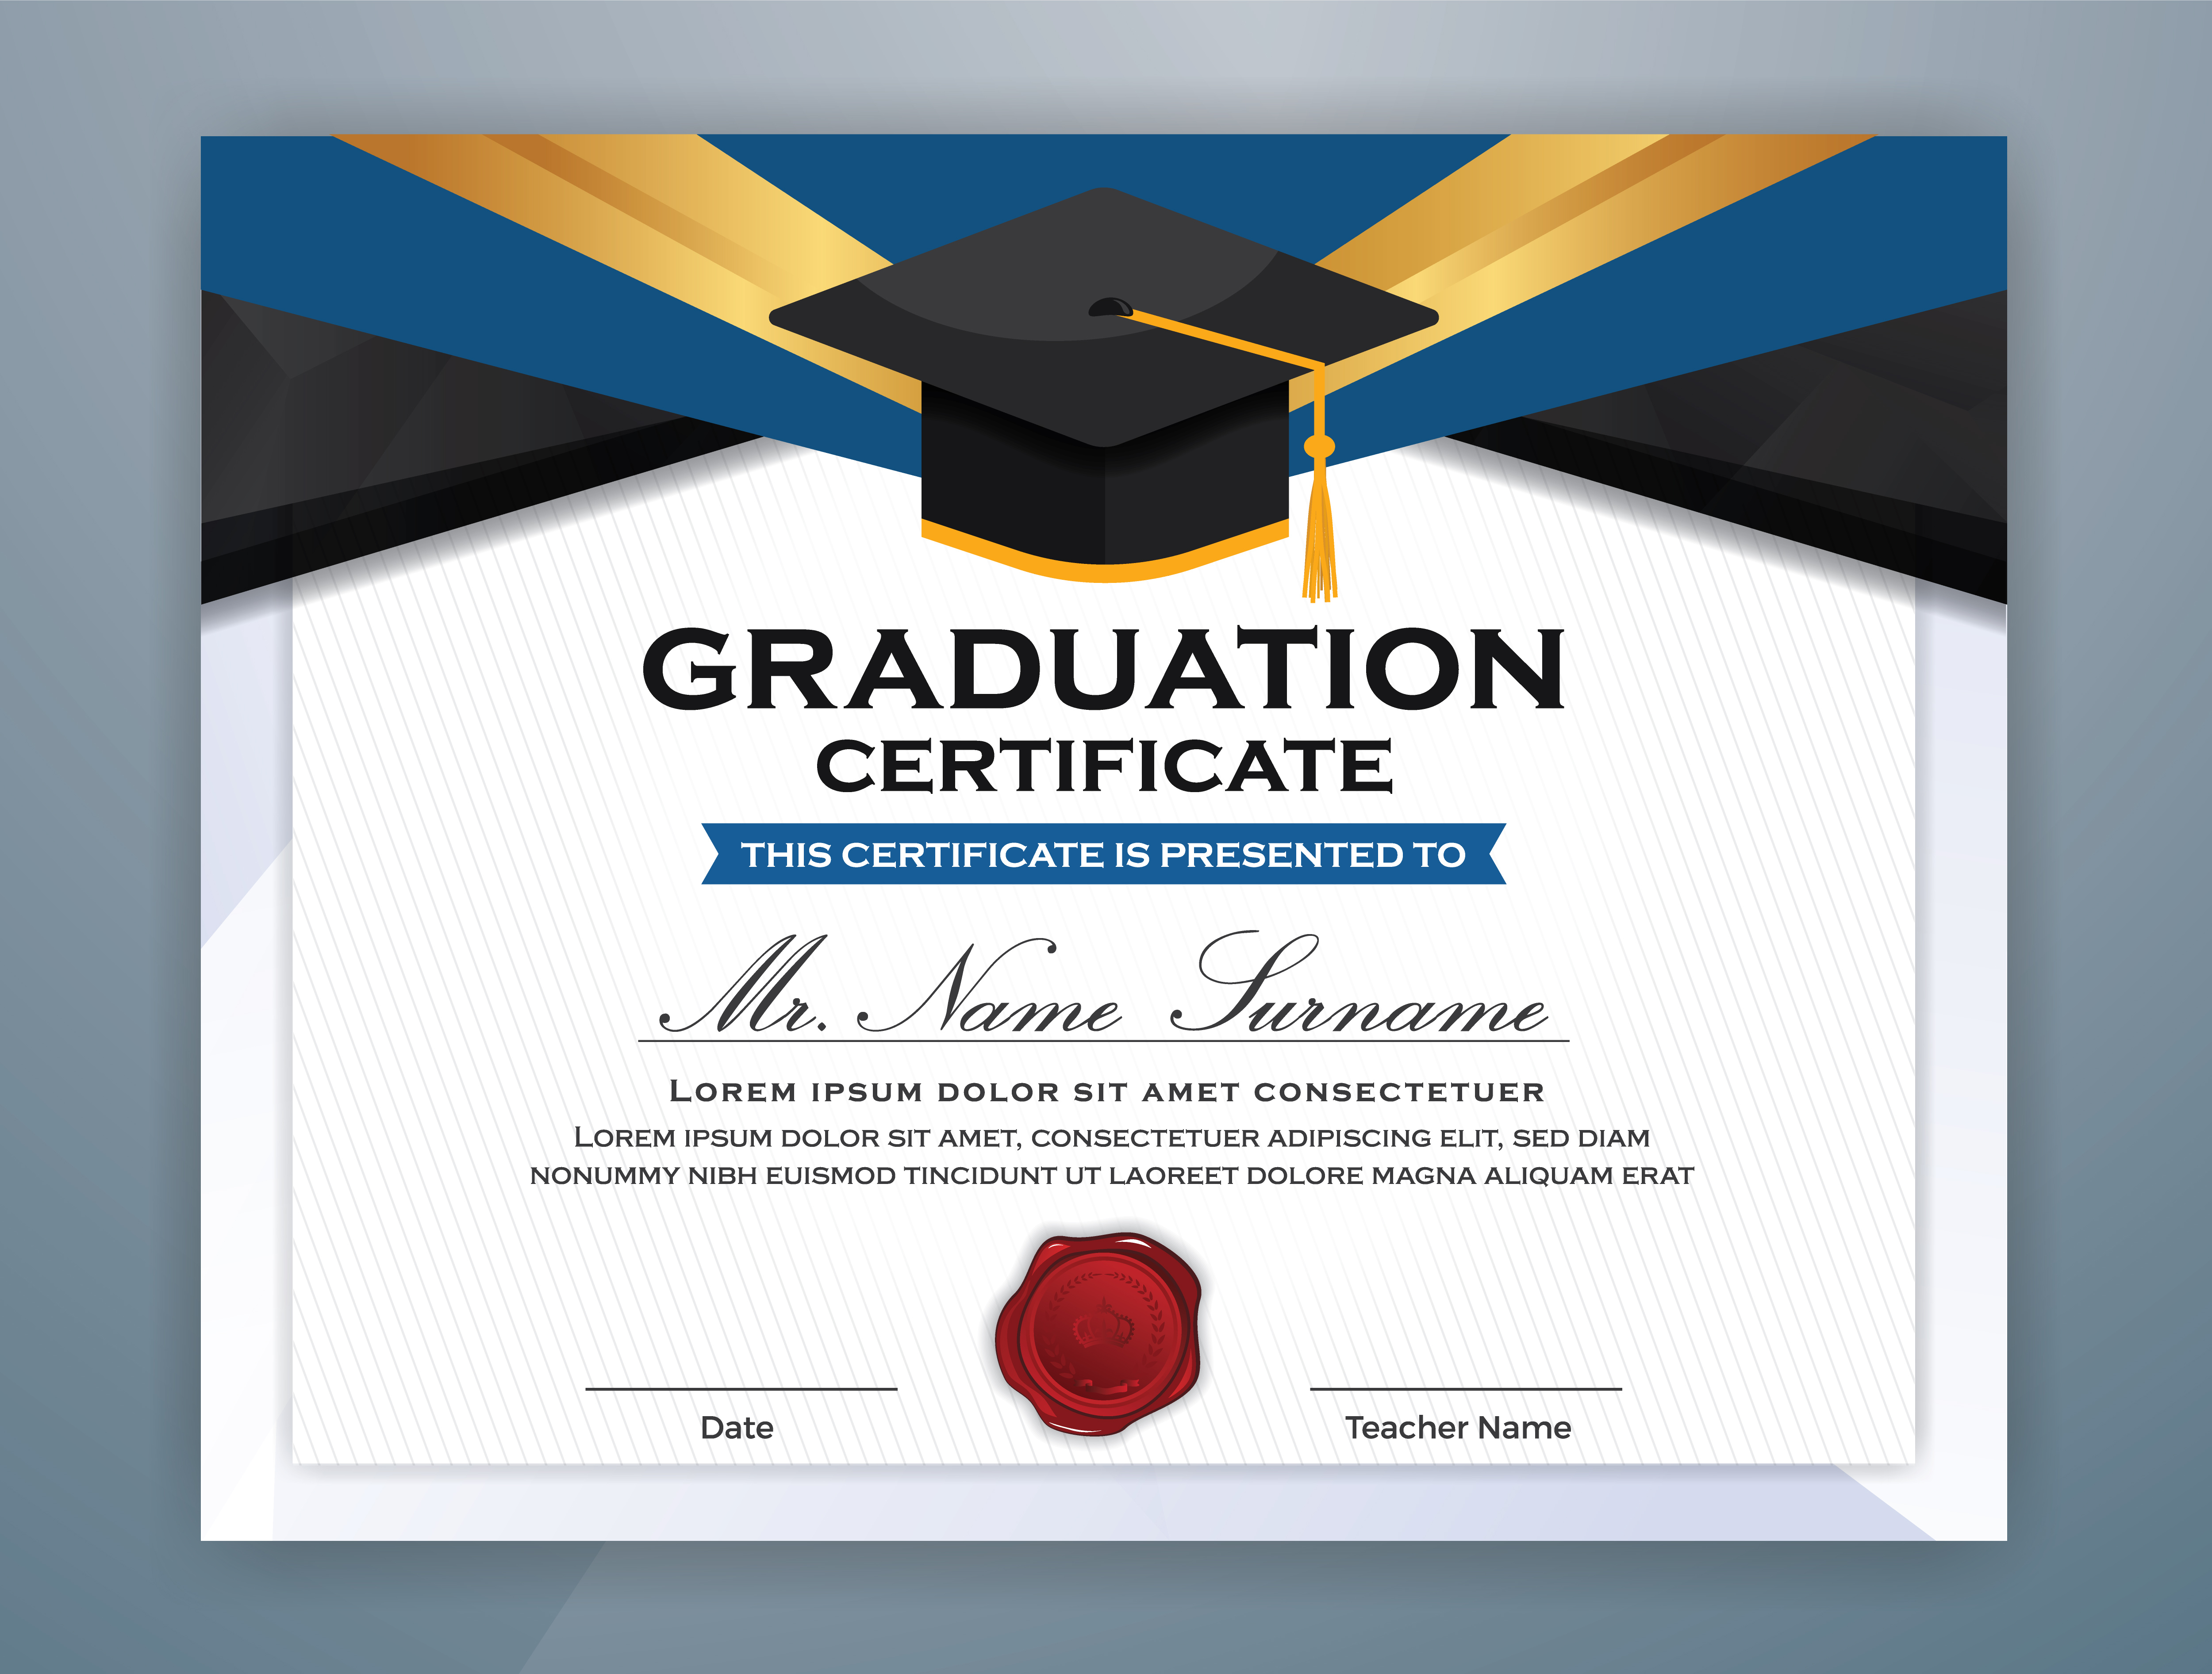 Graduate Certificate For College Car Rebate Bmw